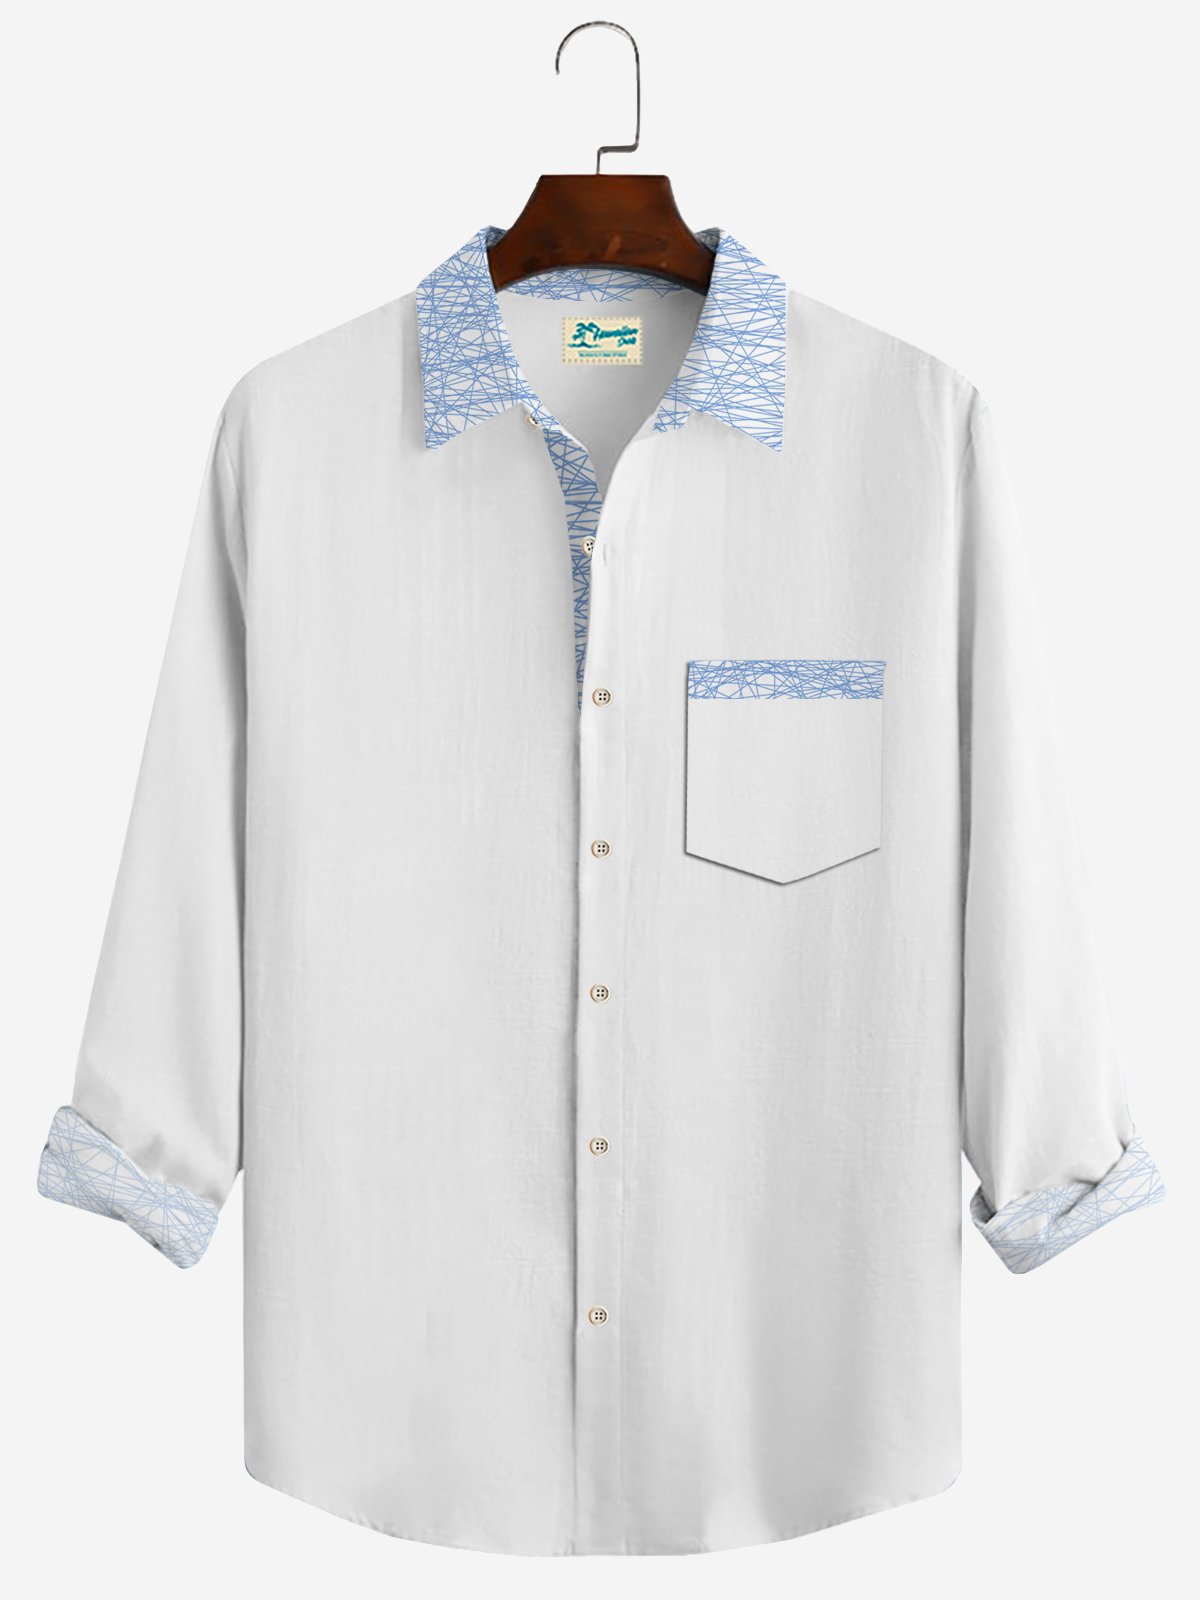 Royaura Aztec Print Vintage Men's Button Pocket Long Sleeve Shirt